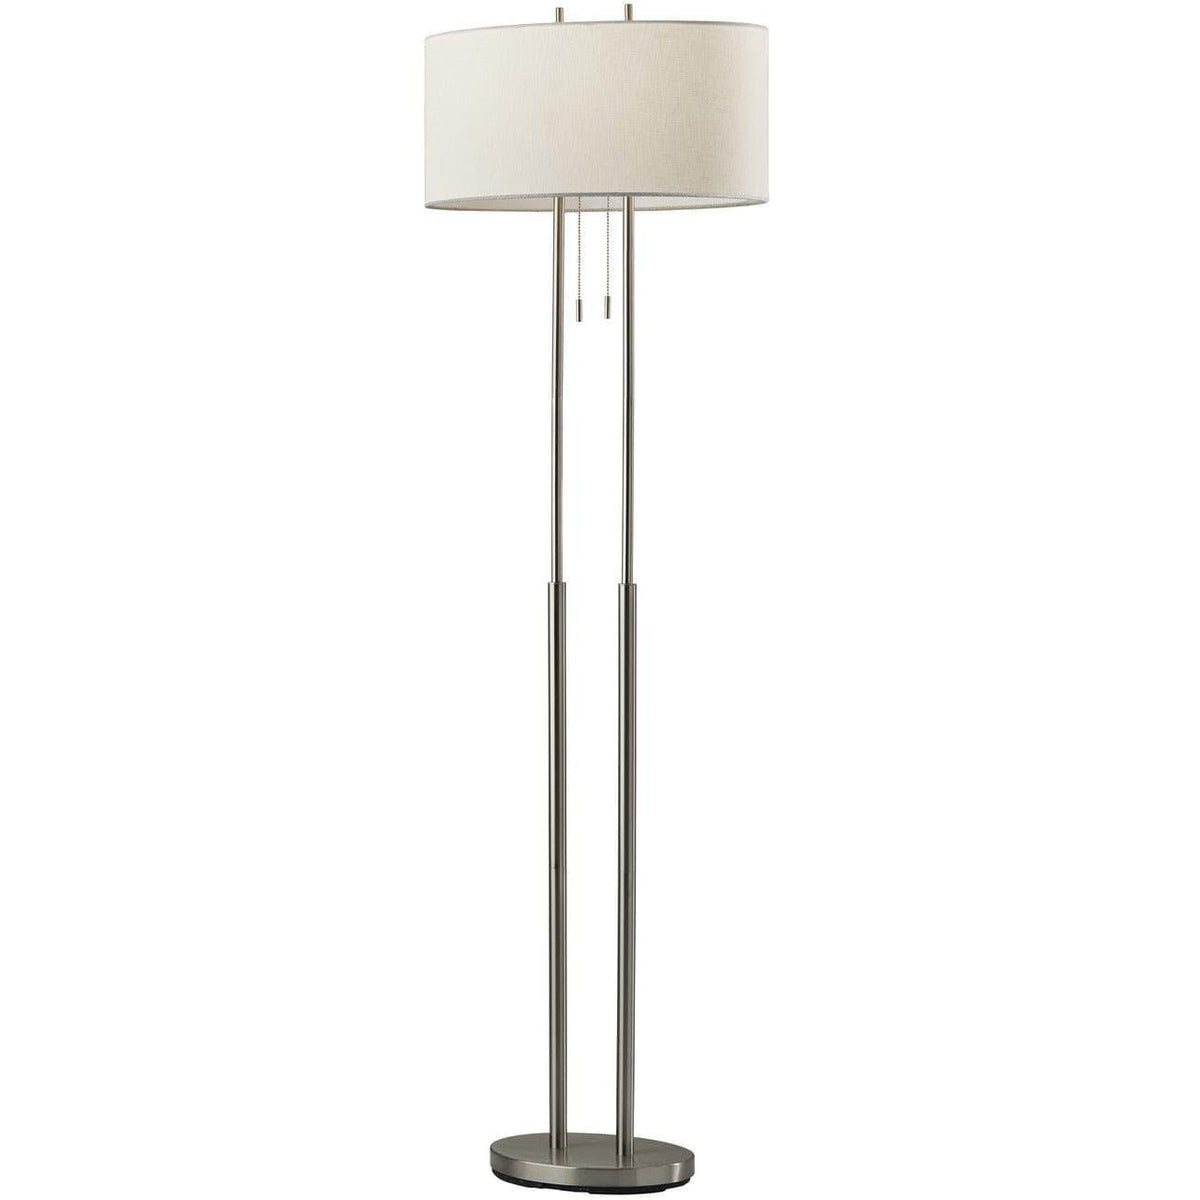 Adesso Home - Duet Floor Lamp - 4016-22 | Montreal Lighting & Hardware